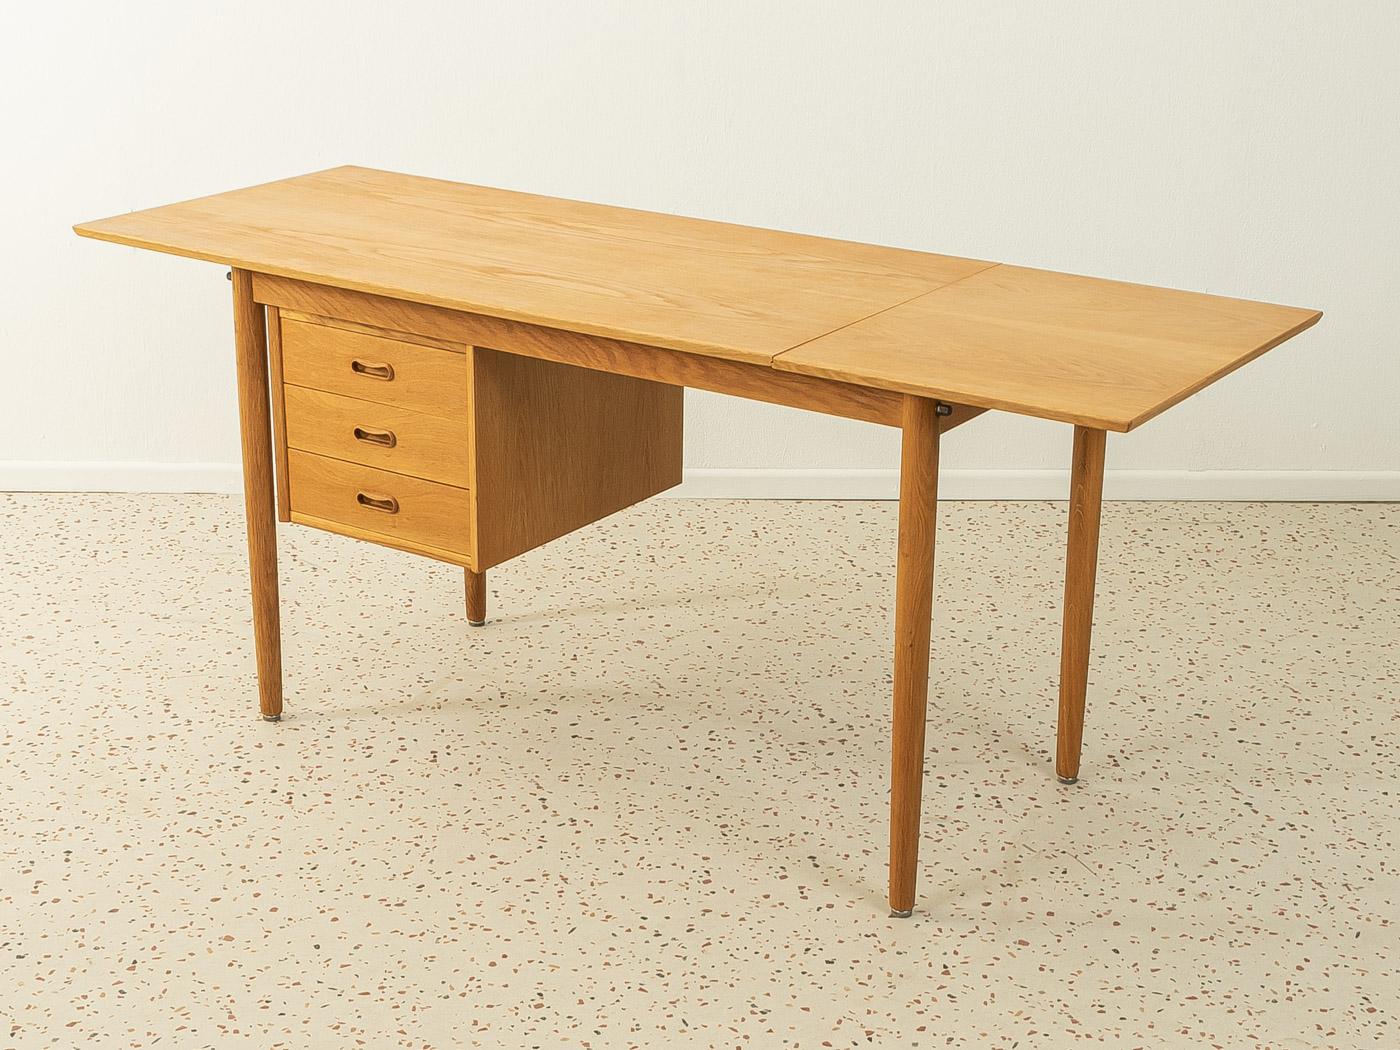 Oak Freestanding Desk from the 1960s by Arne Vodder for H. Sigh, Made in Denmark